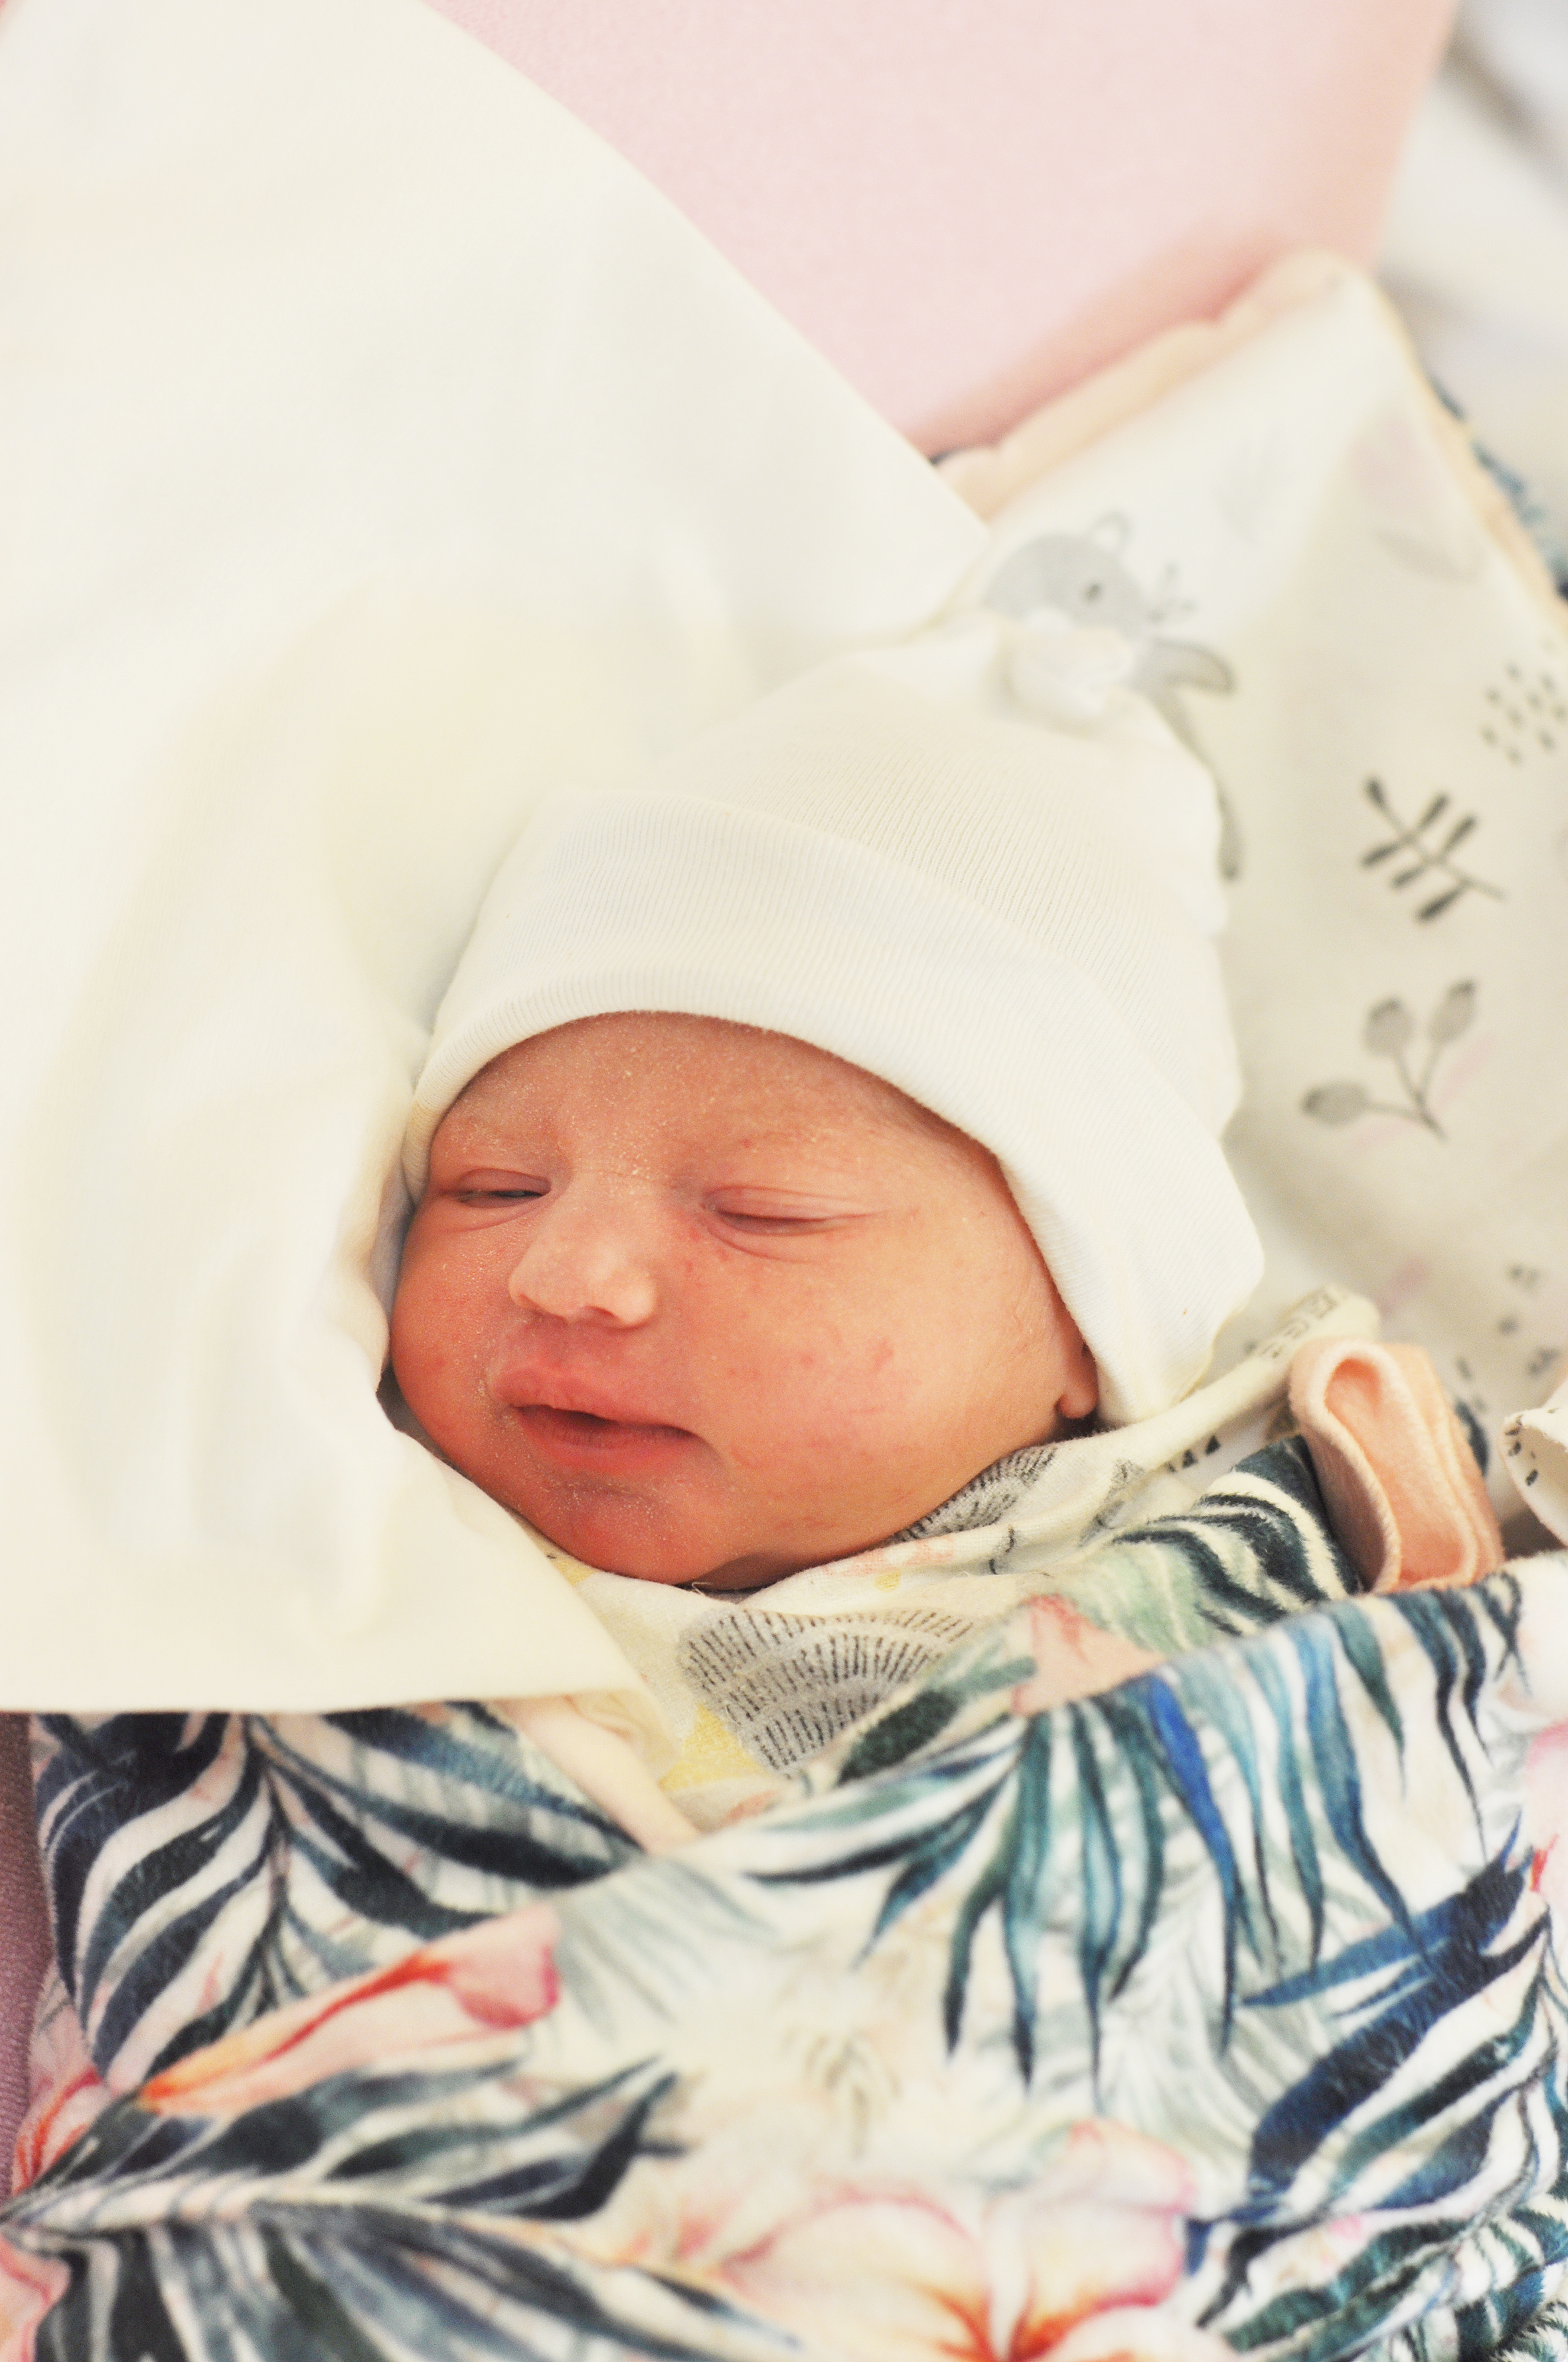 Jaśmina Dziedzic jest nową mieszkanką Raciborza. Jej rodzicami są Patrycja i Łukasz. Córka przyszła na świat 25 lutego o 14.10, ważyła 2830 g, mierząc 52 cm.